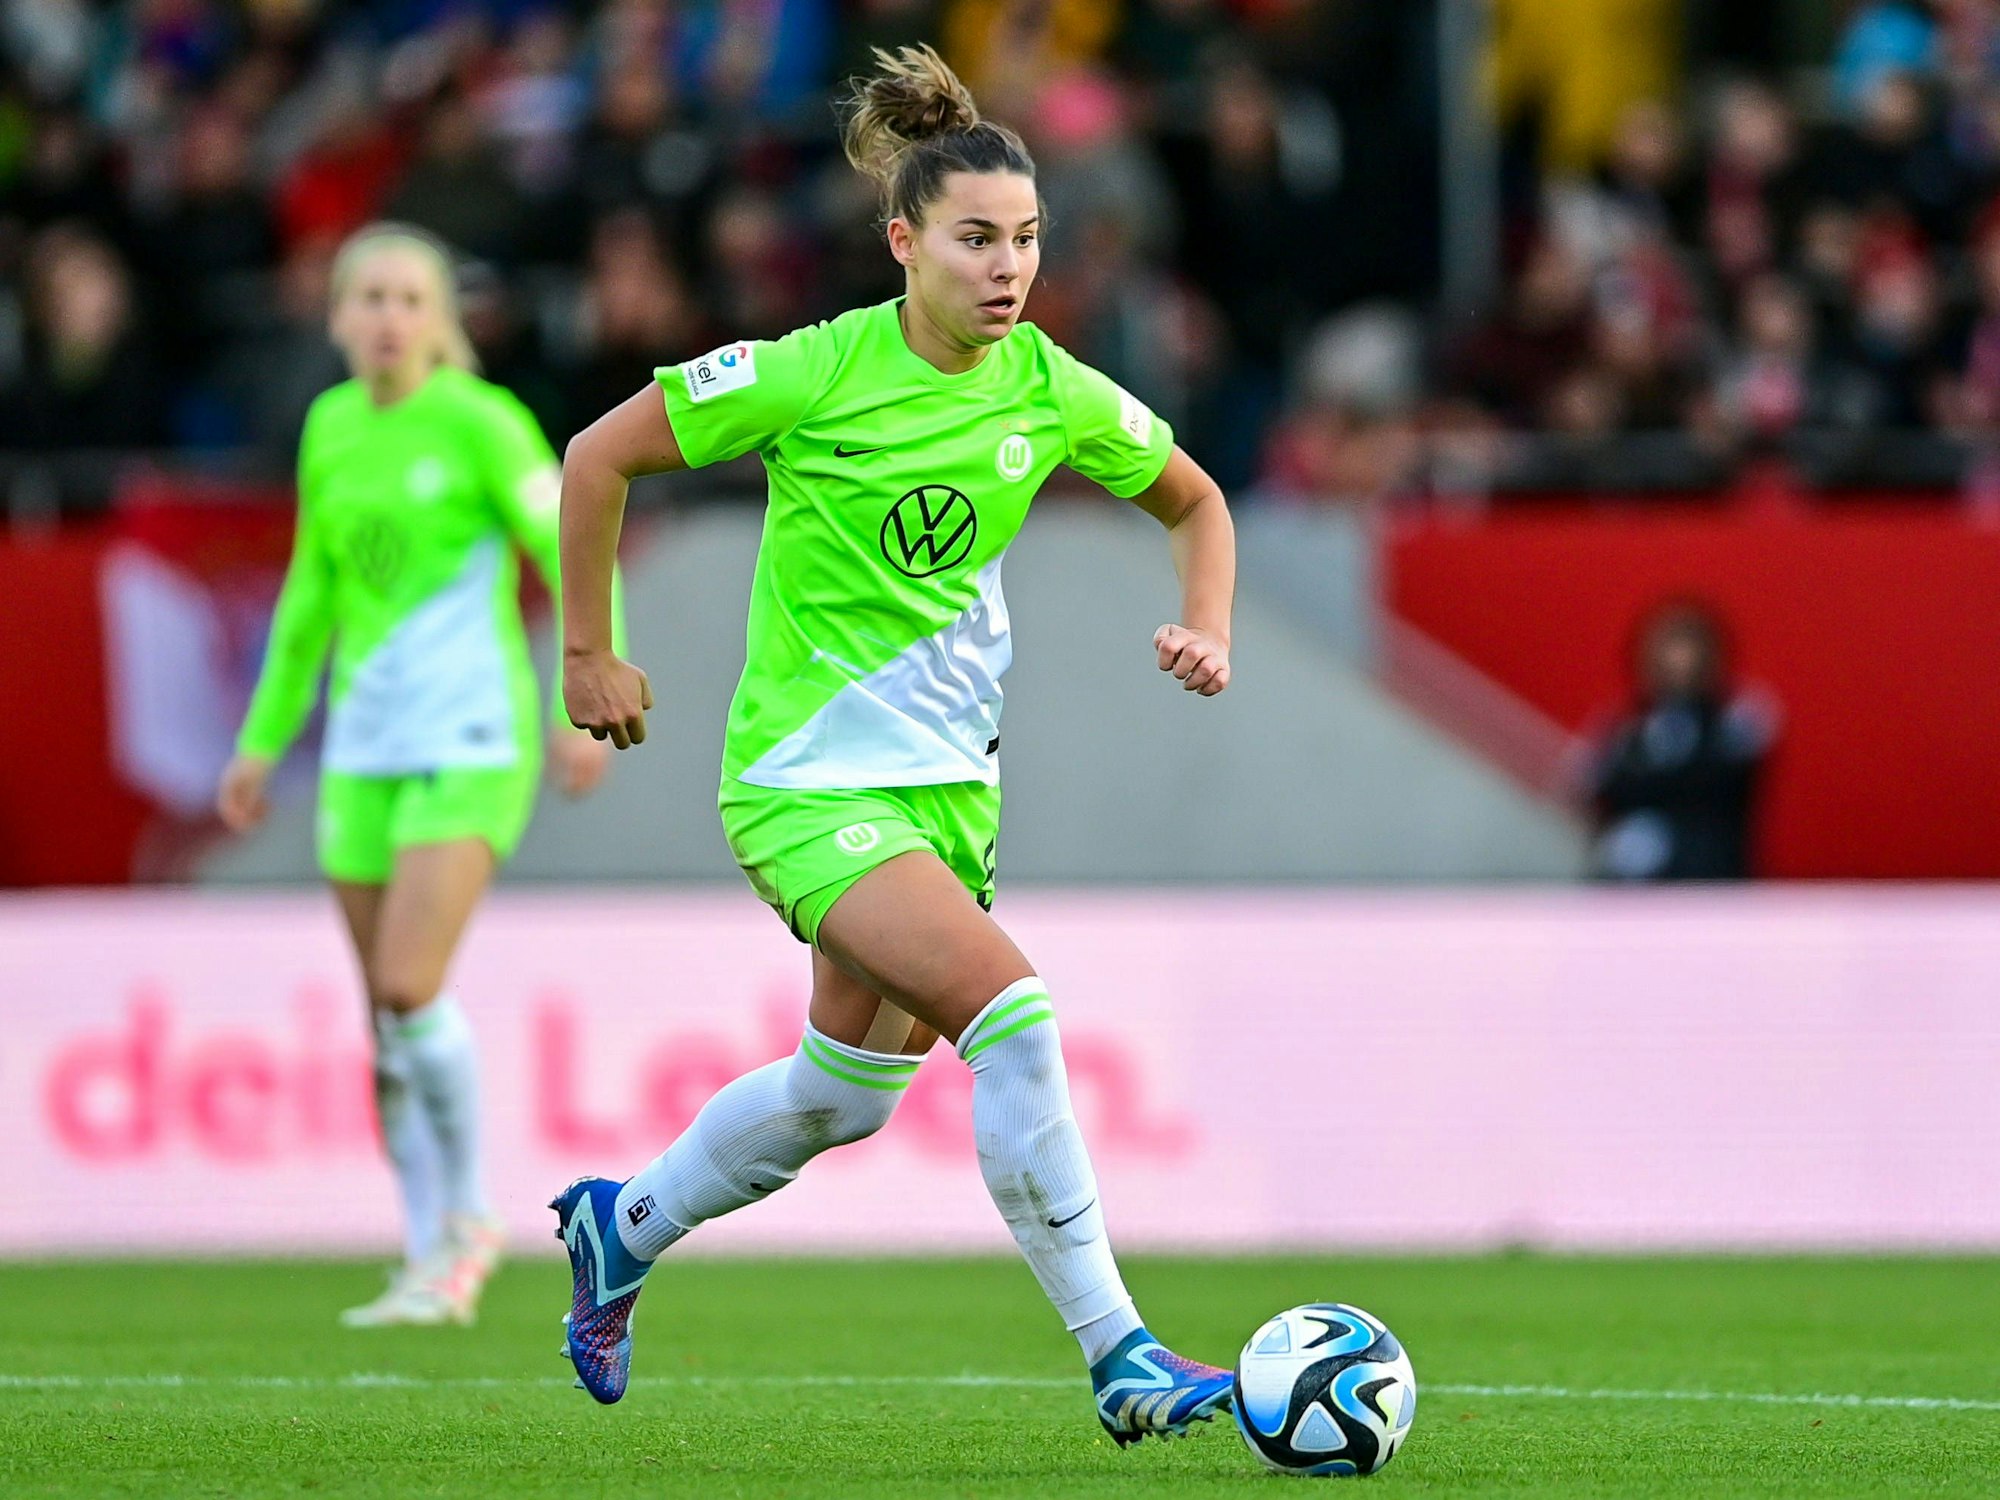 Lena Oberdorf im Trikot des VfL Wolfsburg am Ball.